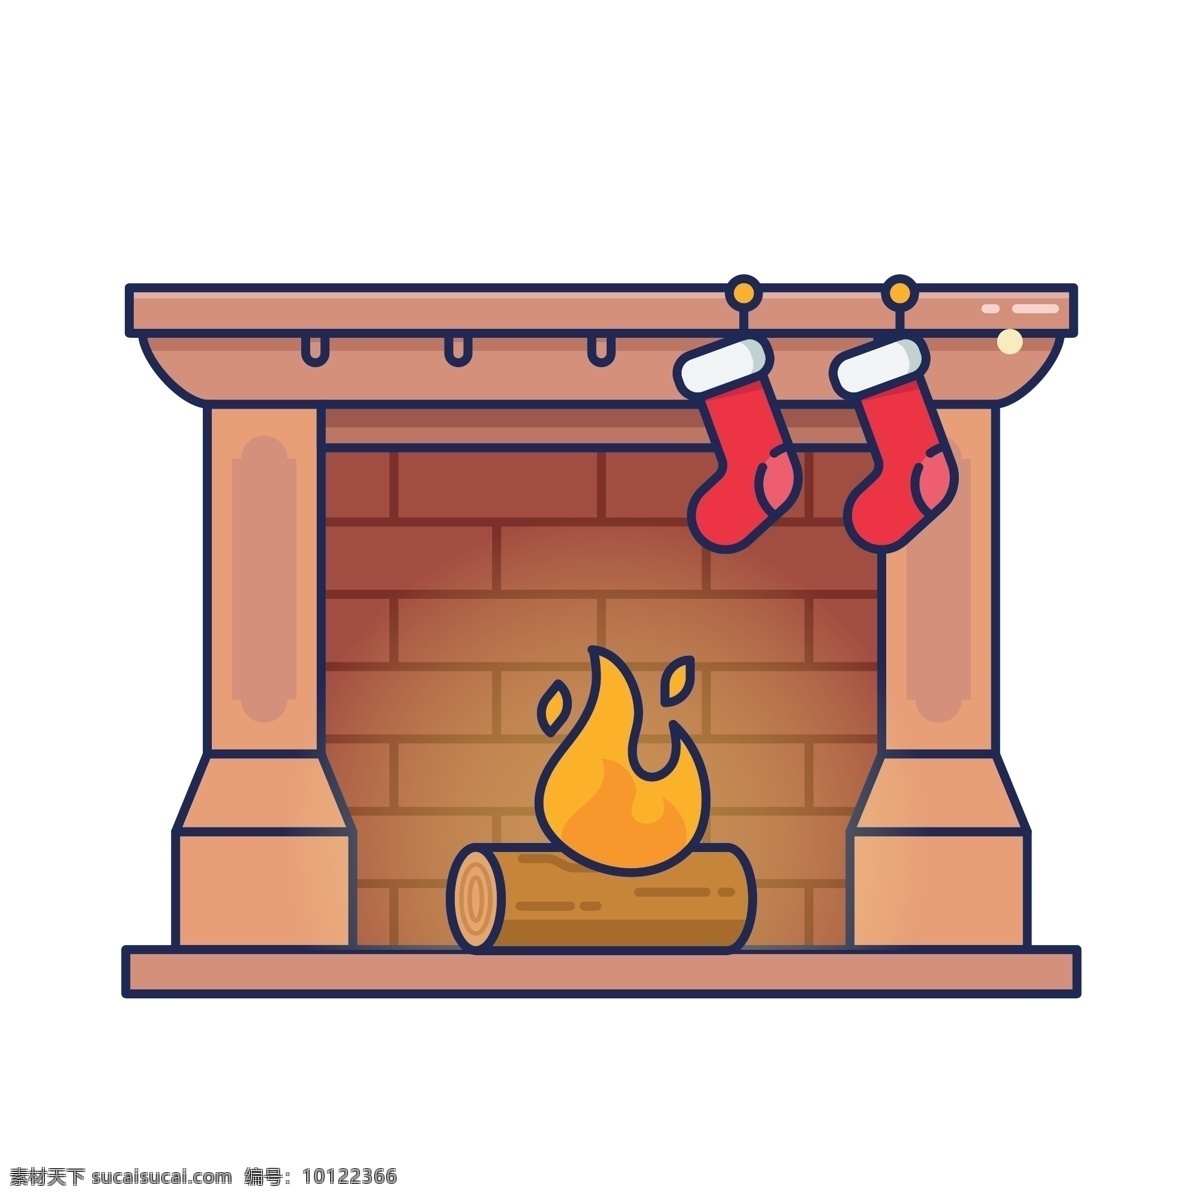 冬季 西式 壁炉 冬季冬天 西式壁炉 圣诞袜 袜子 火柴火苗 精美贴图 圣诞节 卡通可爱 室内装修